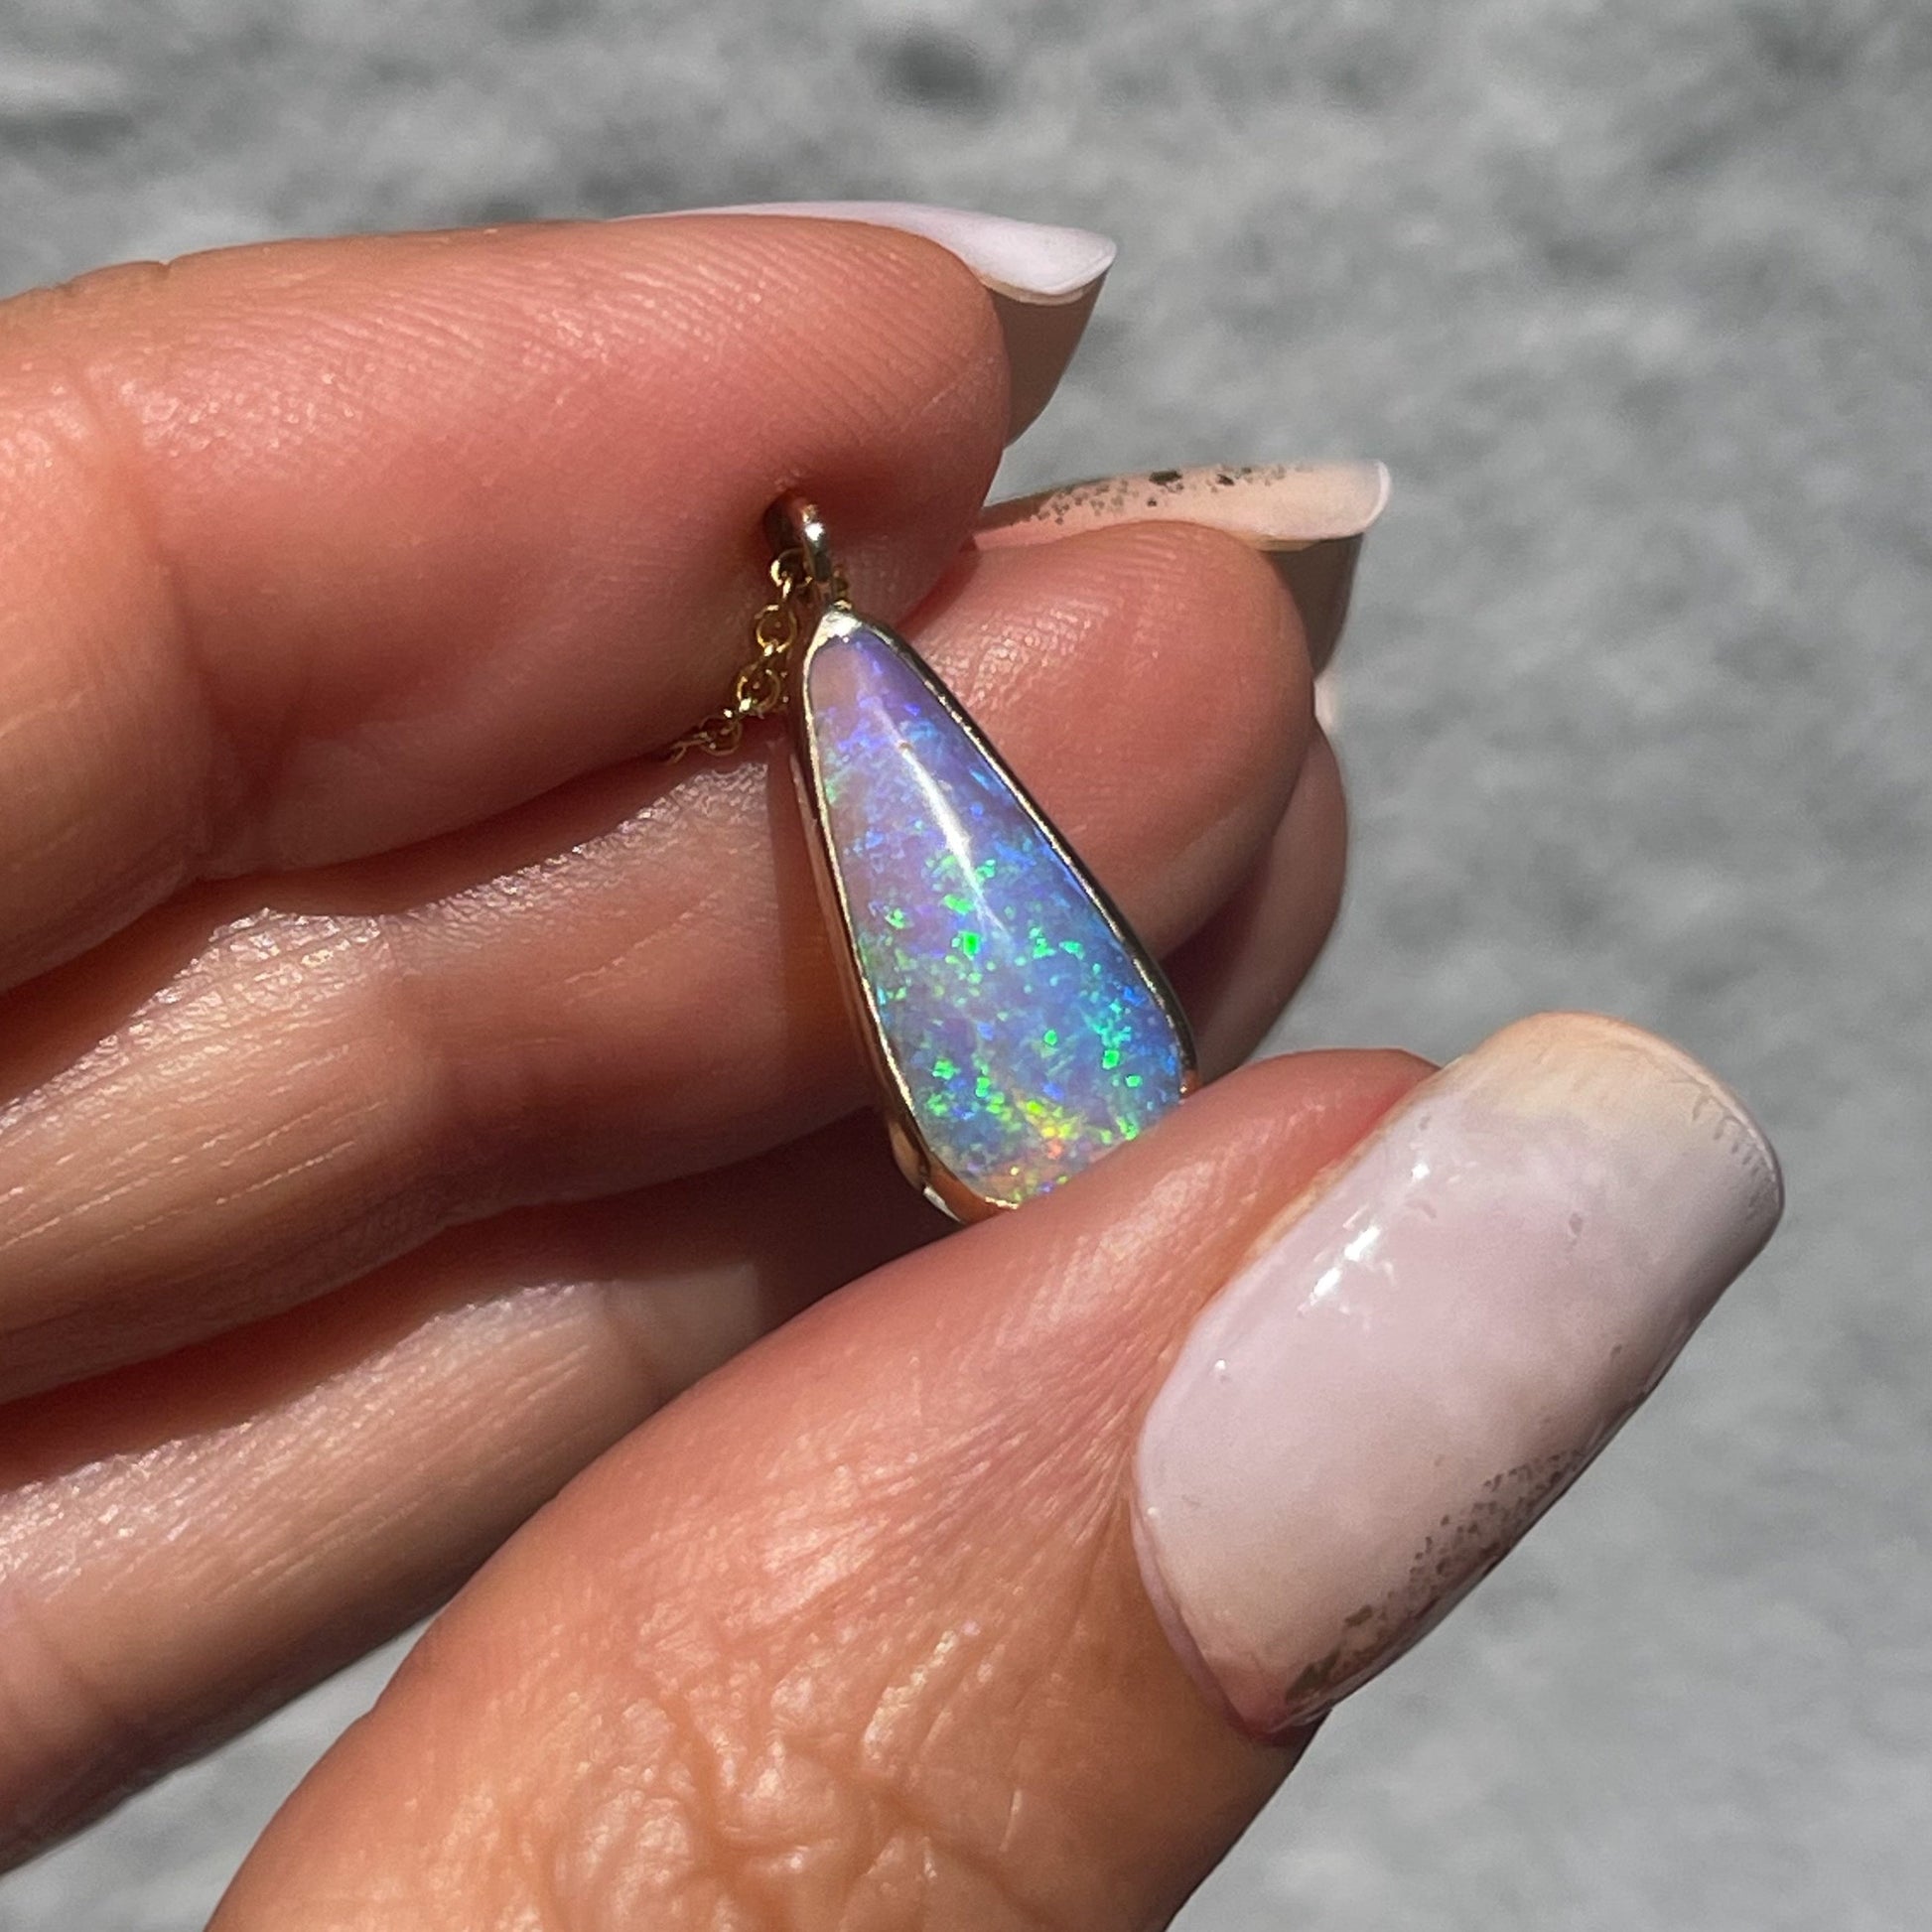 Australian Opal Necklace by NIXIN Jewelry held in sunlight. Crystal opal necklace.